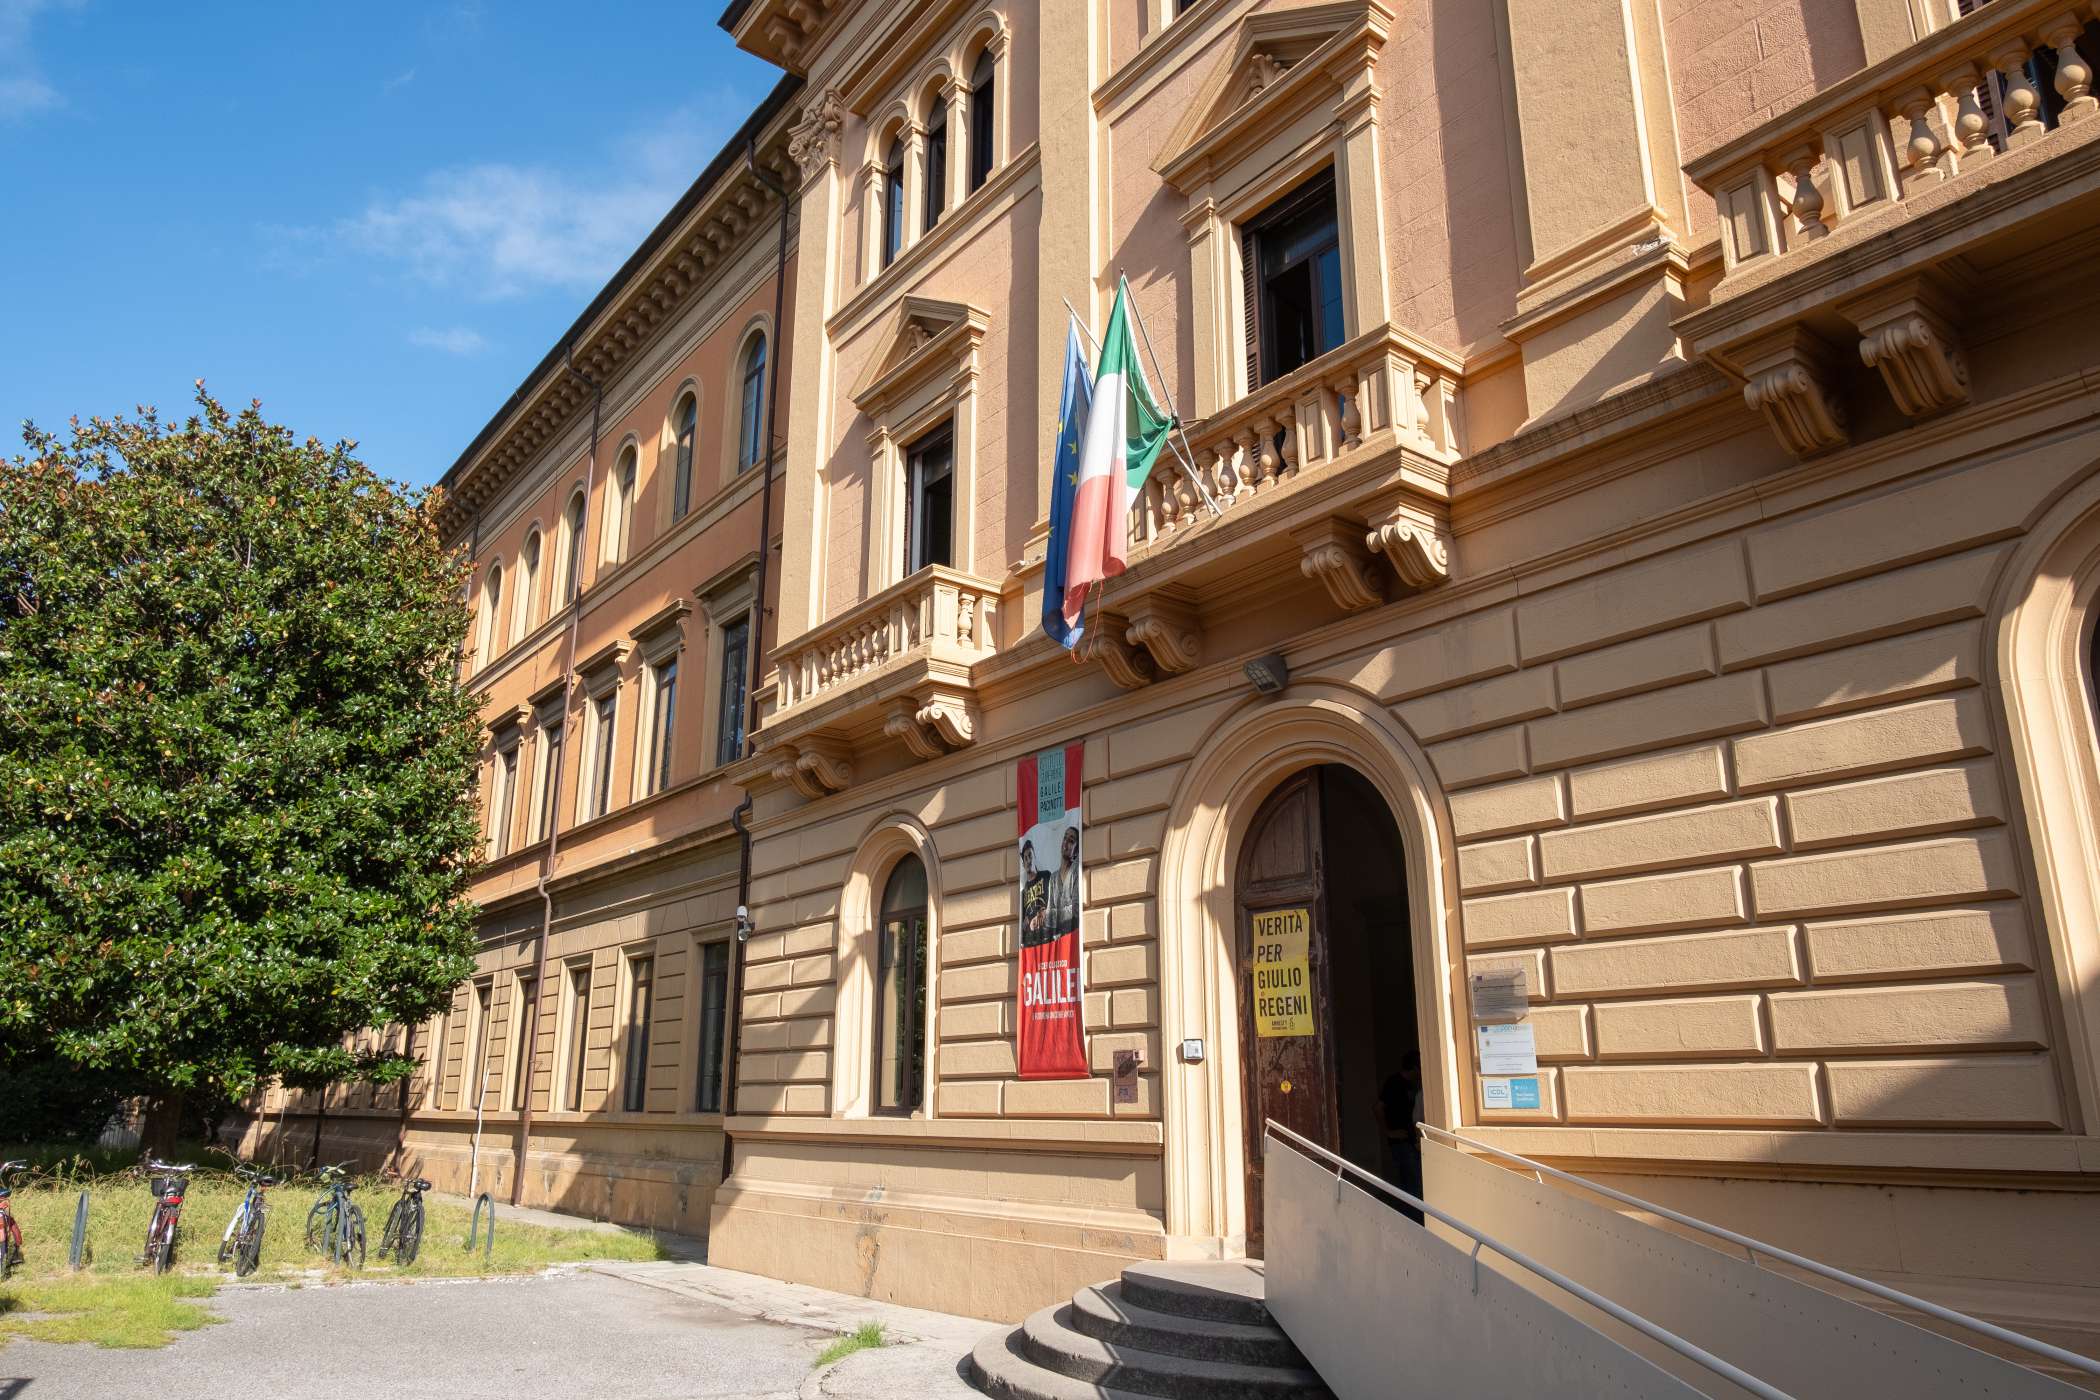 La facciata dell'IIS Galilei-Pacinotti - ingresso principale del Liceo Classico Galilei visto in prospettiva